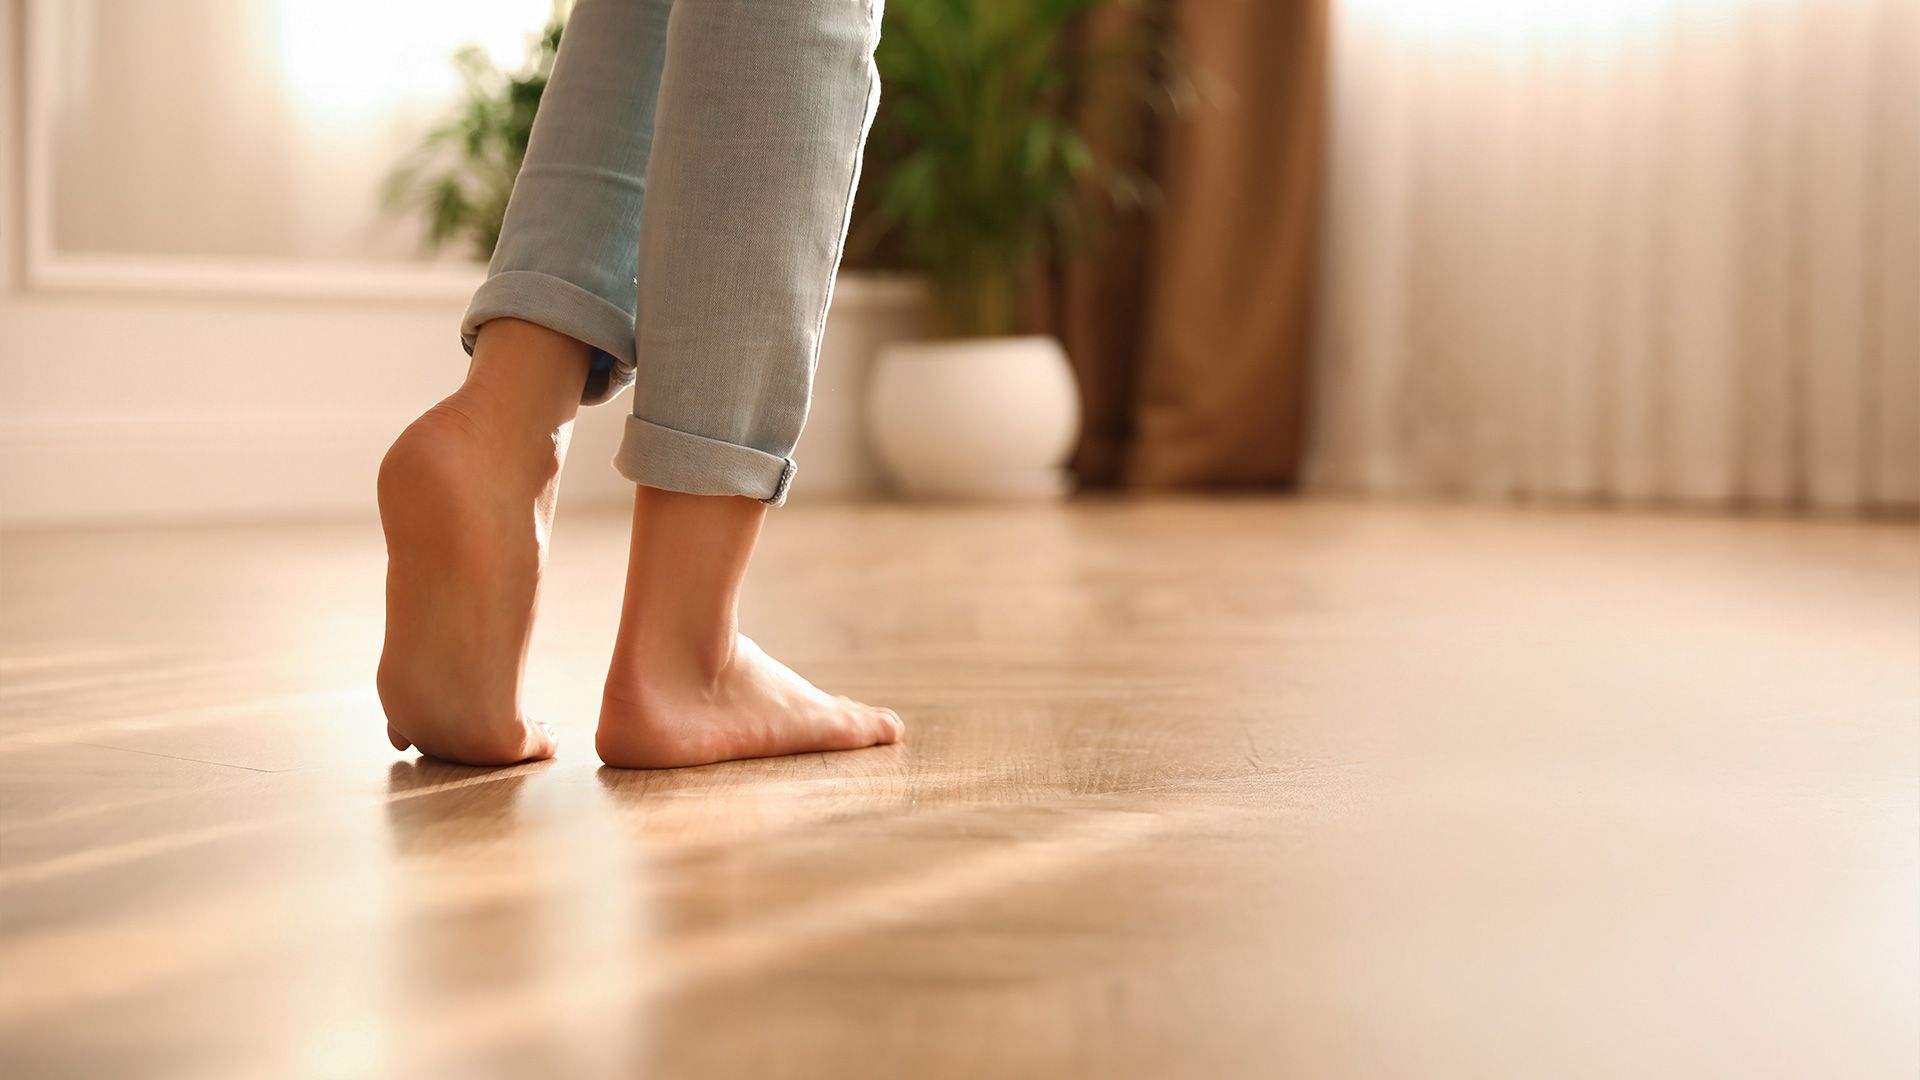 Femme marchant pieds nus sur un plancher 